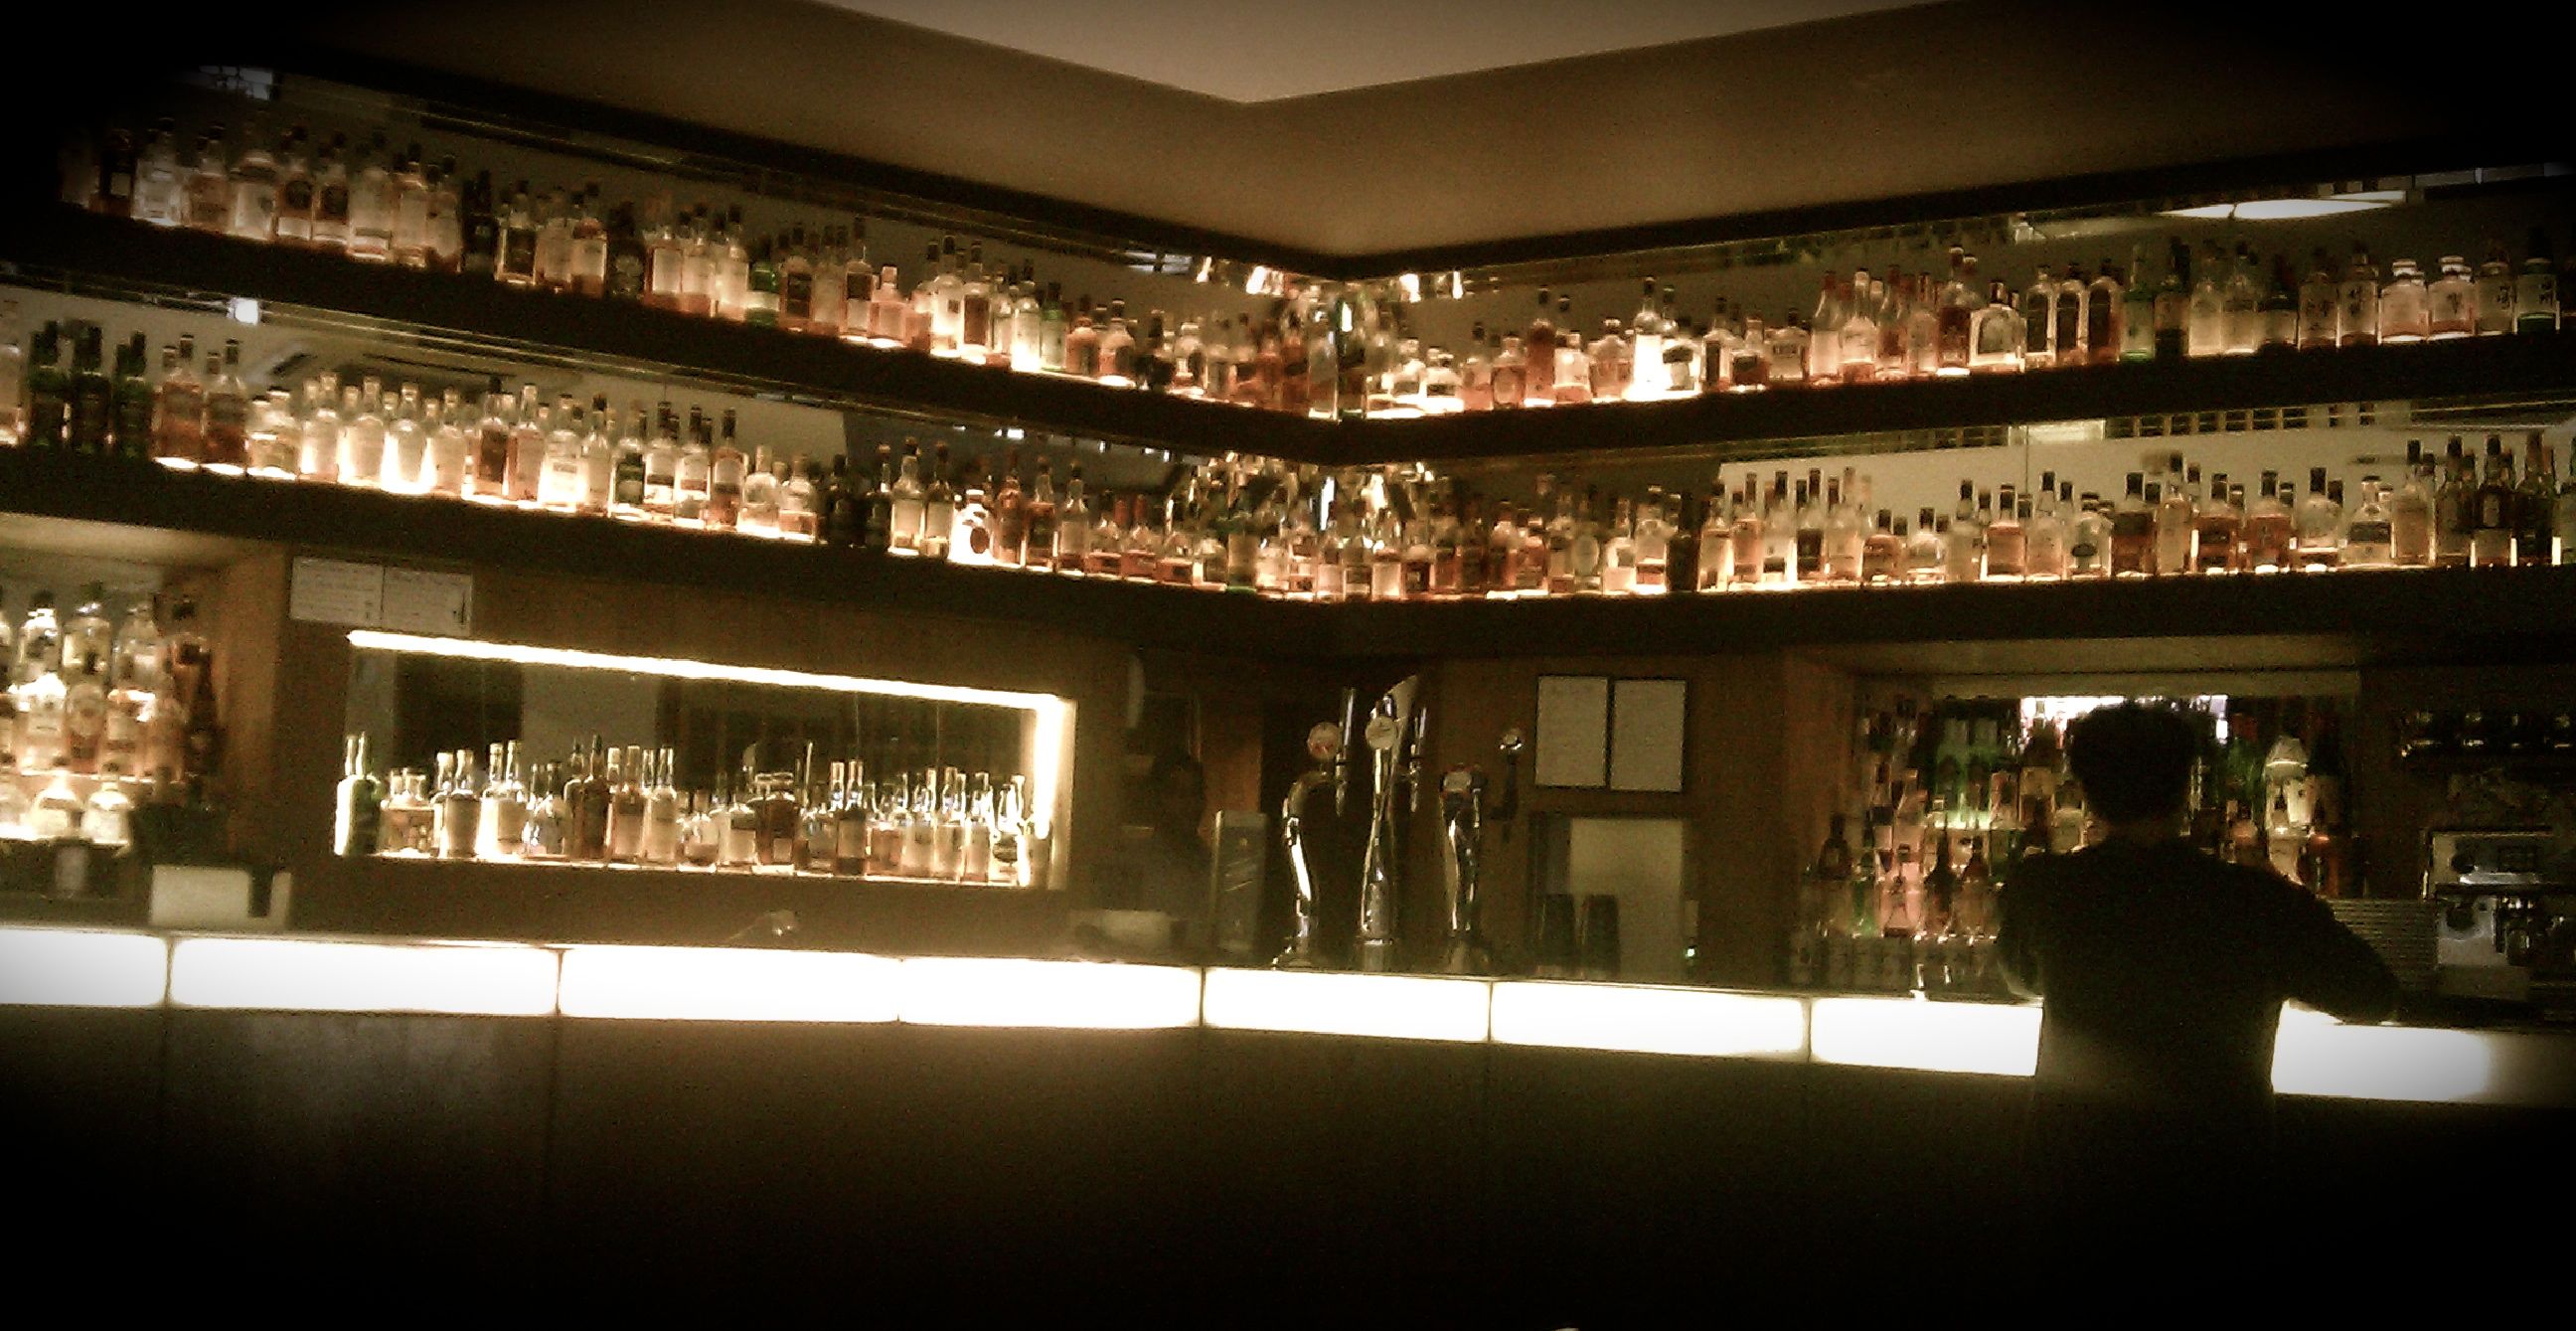 Shelves of whisky bottles at Salt Bar in London